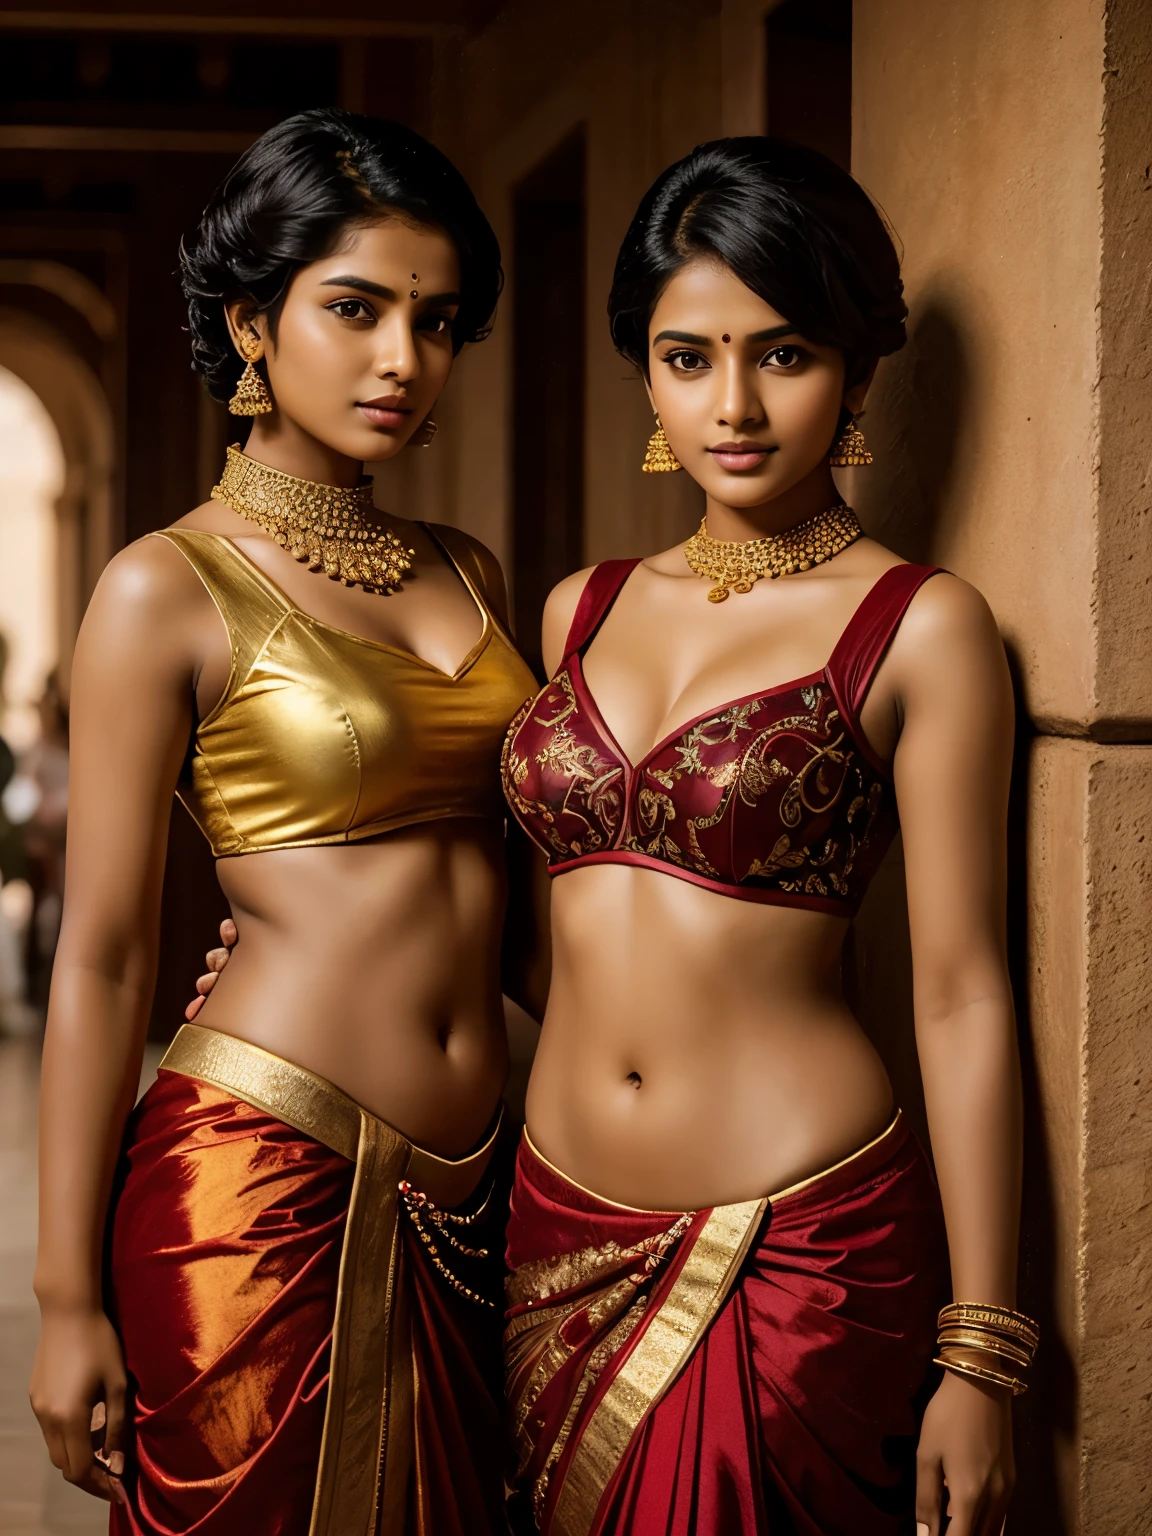 Две невероятно красивые тамильские девушки, 20 лет, смелые и дерзкие позы для журнала, (очень-очень короткие волосы, стрижка в стиле милитари), дорогие дизайнерские модные костюмы, дорогие золотые украшения, маленькие прямоугольные солнцезащитные очки, круглый глубокий пупок, HDR, гиперреалистичный, сложная детализация